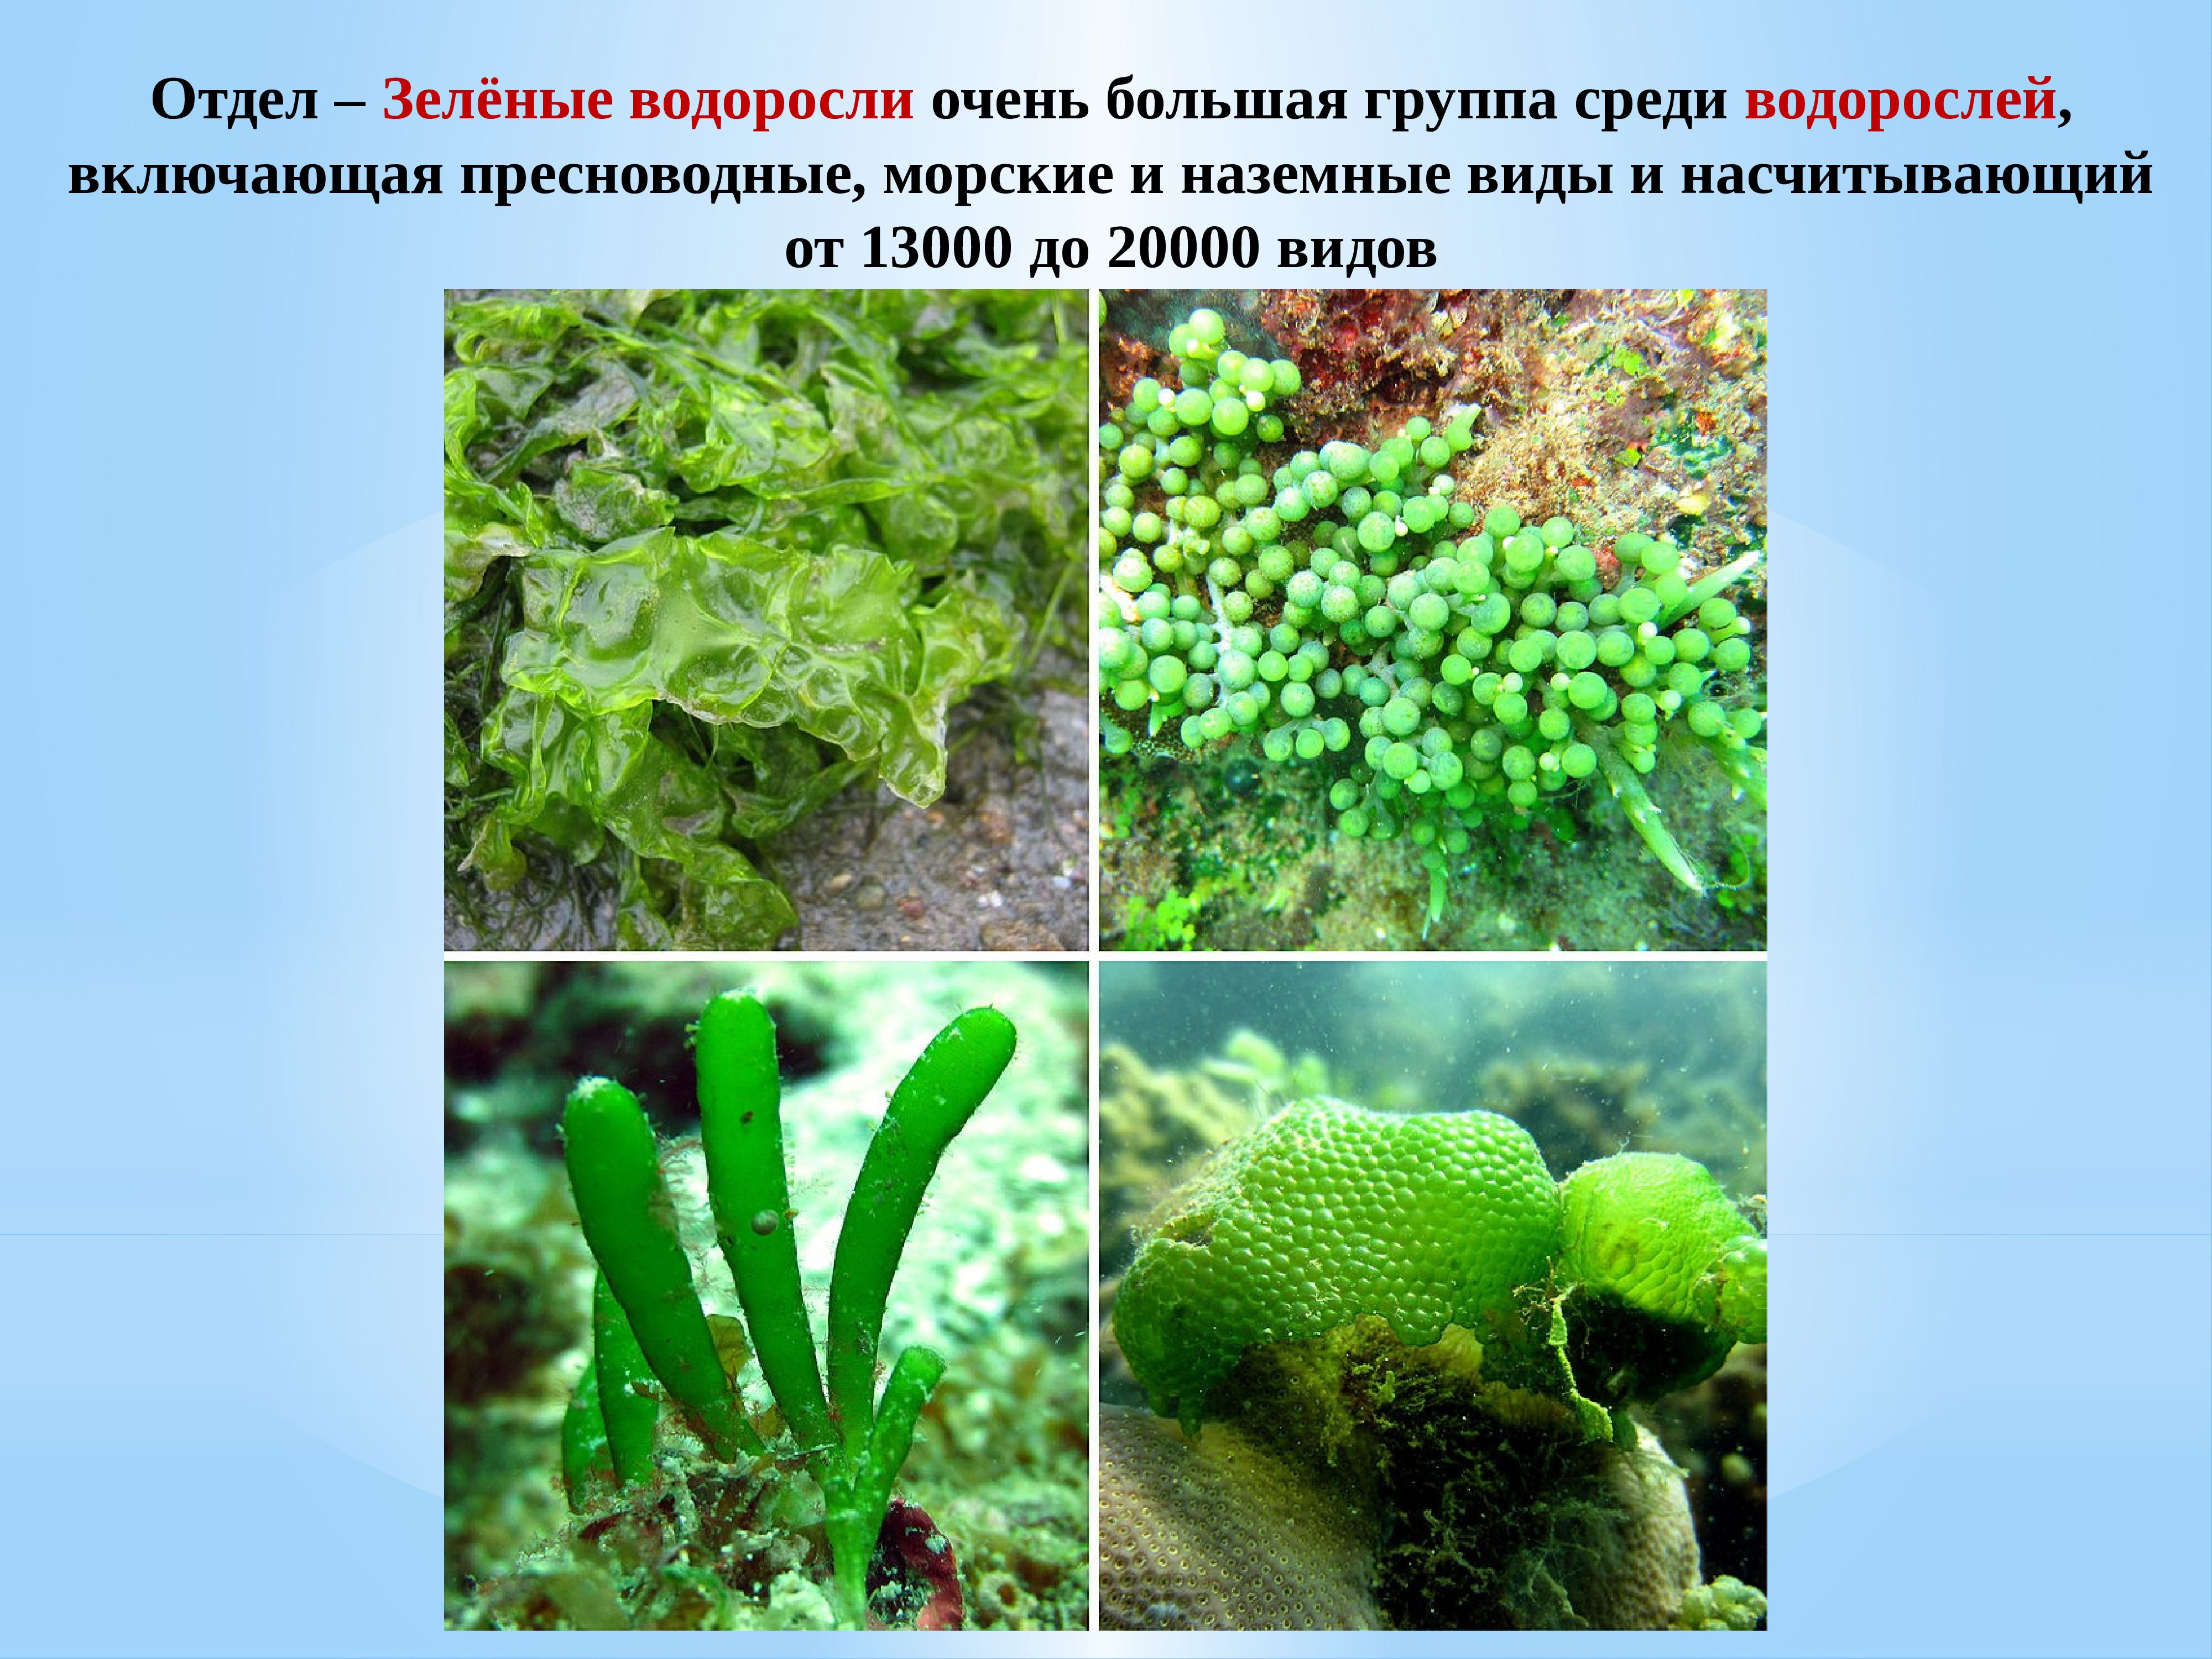 Отдел зеленые водоросли представители. Многоклеточные пластинчатые водоросли. Отряд зеленые водоросли. Зелёные водоросли представители. Представили зеленых водорослей.